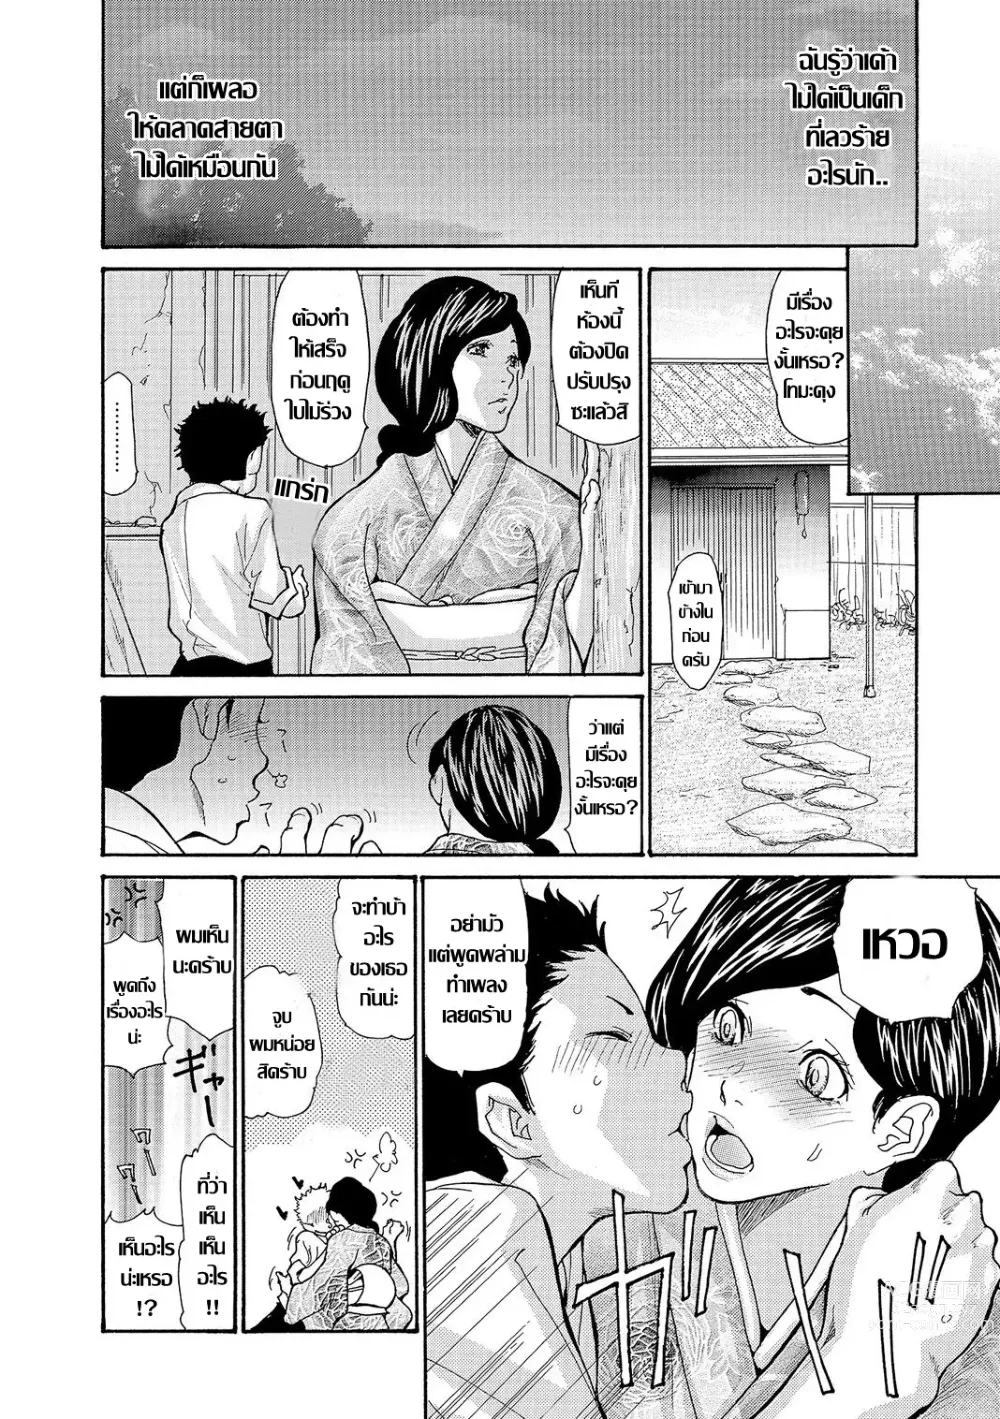 Page 44 of doujinshi Onsen Okami Netorare Hiwa 1-3